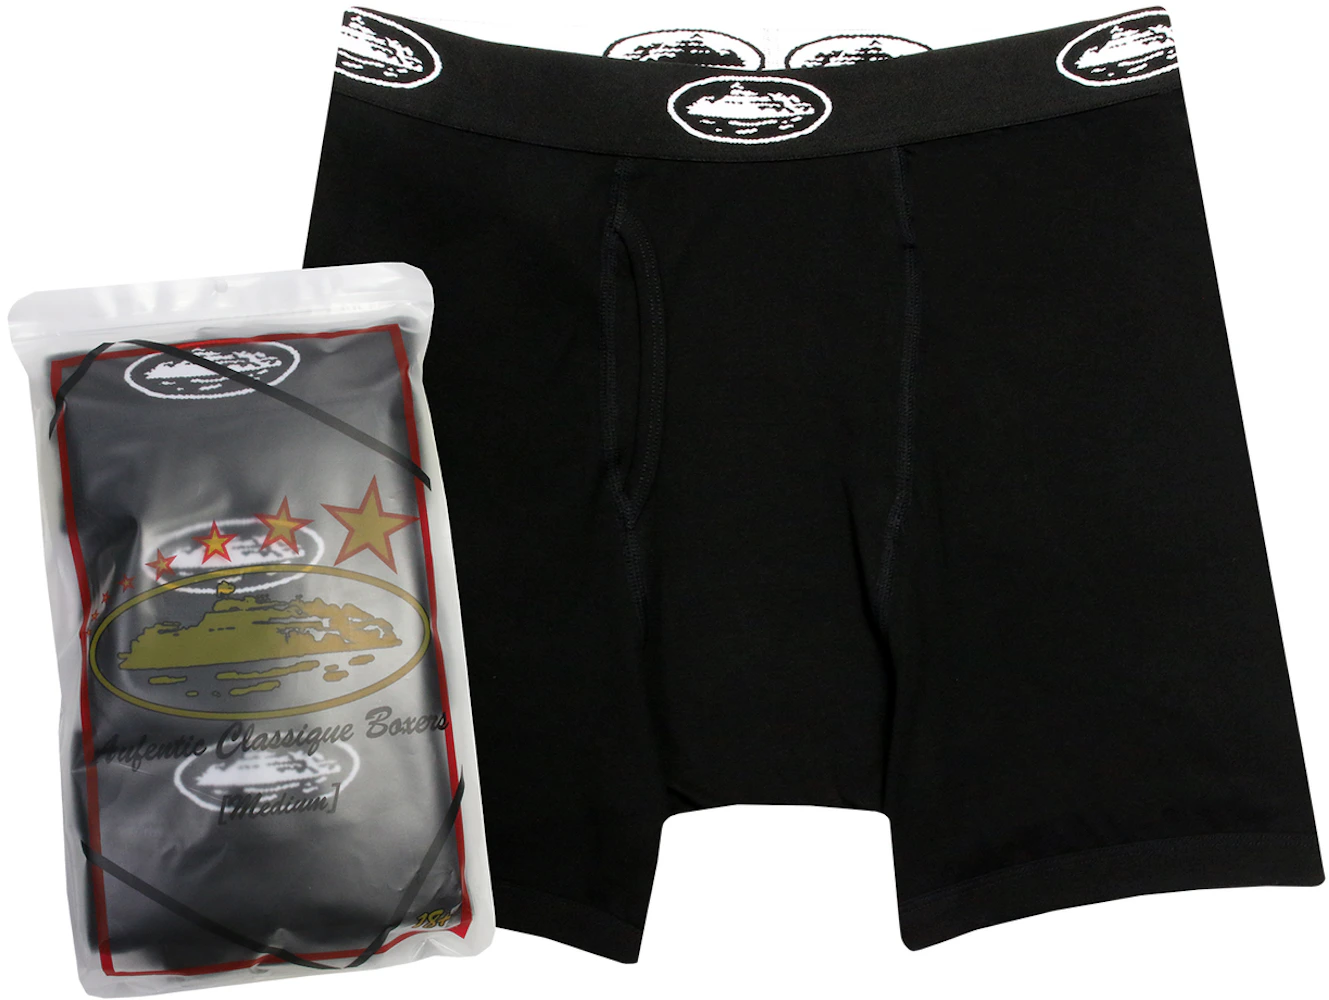 GUCCI Boxer Brief 3-Pack Mens Underwear